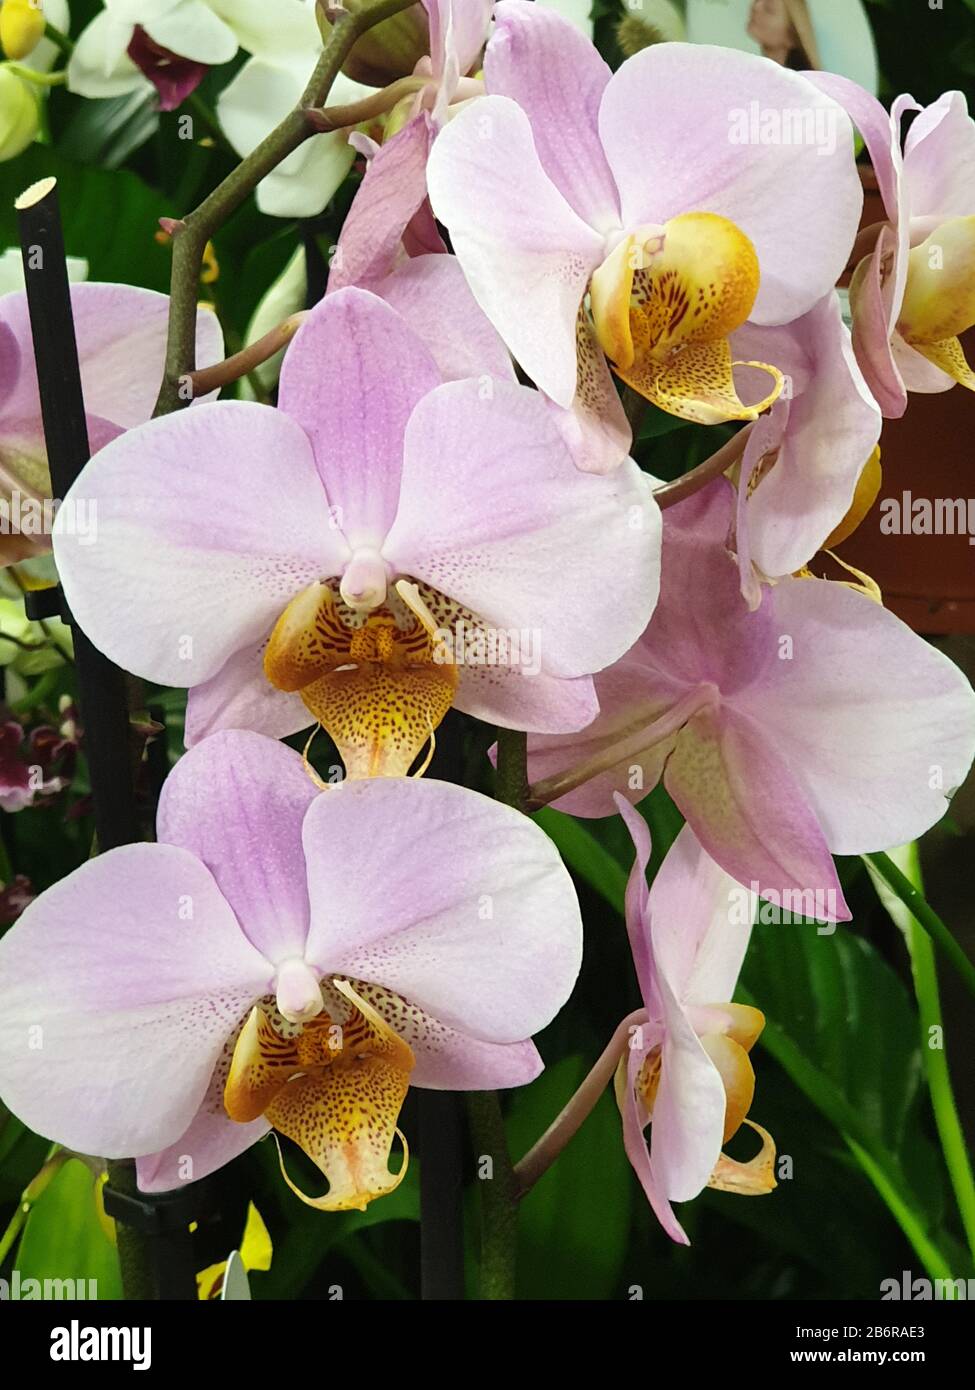 Les Orchidés ou les Orchidaceae, jaune et blanc, Droitwich Spa, Angleterre, Royaume-Uni, 10/03/2020, Les Orchidés ou les Orchidaceae sont une variété et des larges prea Banque D'Images